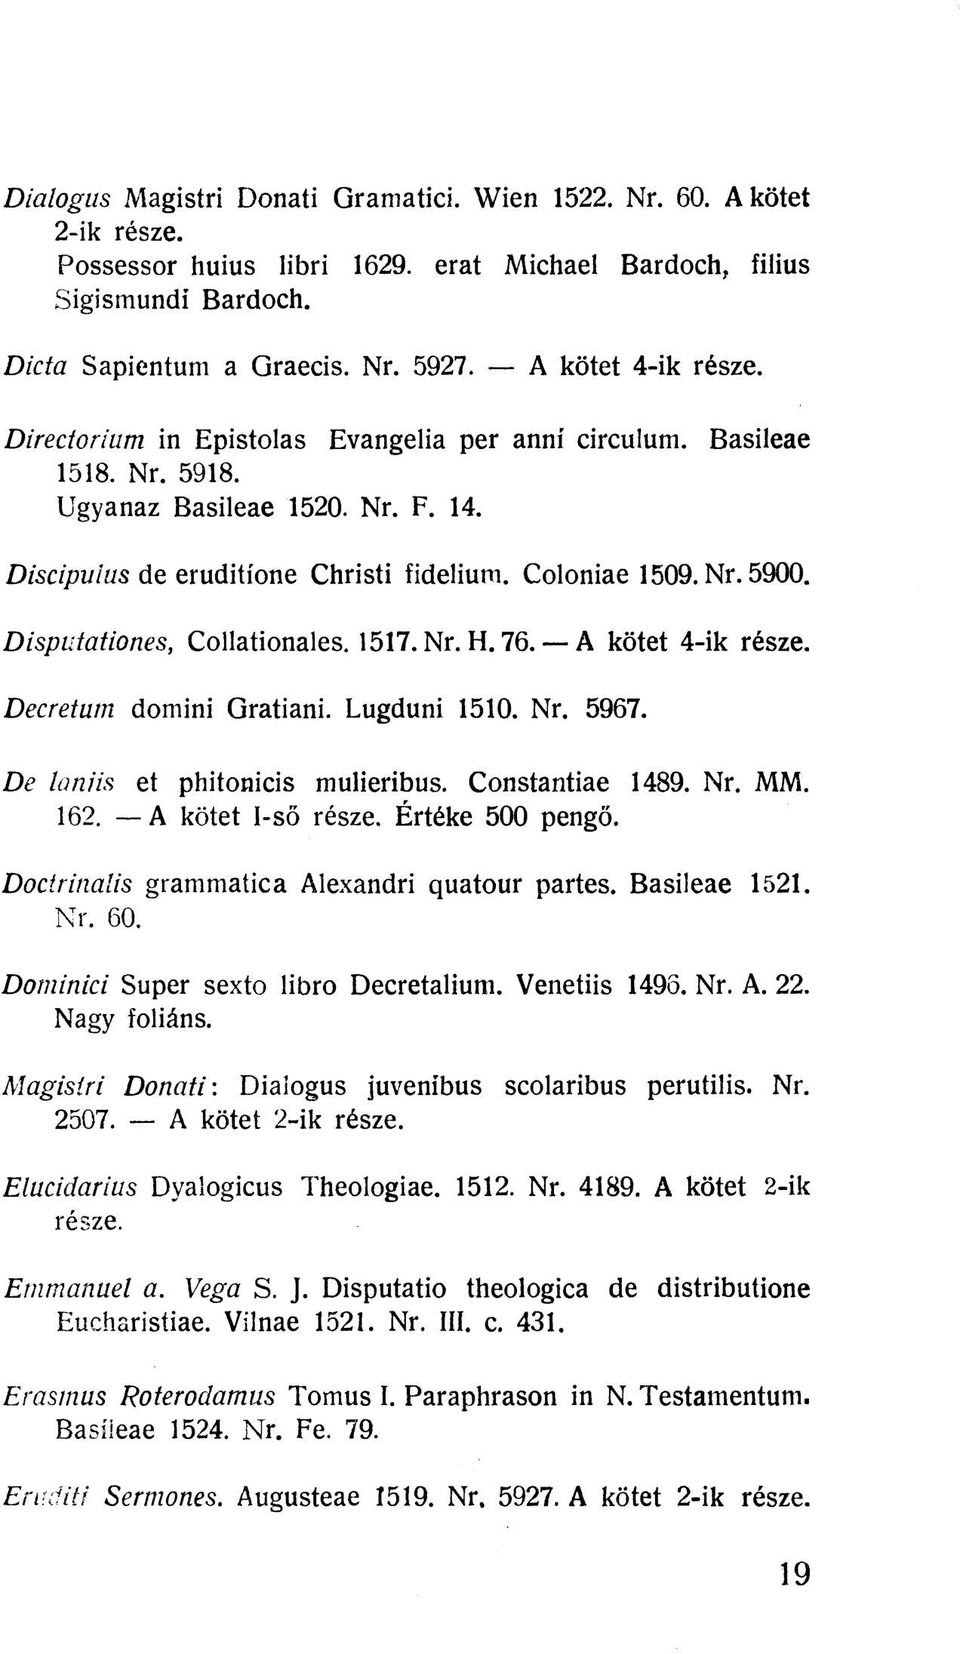 Disputationes, Collationales. 1517. Nr. H. 76. A kötet 4-ik része. Decretum domini Gratiani. Lugduni 1510. Nr. 5967. De laniis et phitonicis mulieribus. Constantiae 1489. Nr. MM. 162.